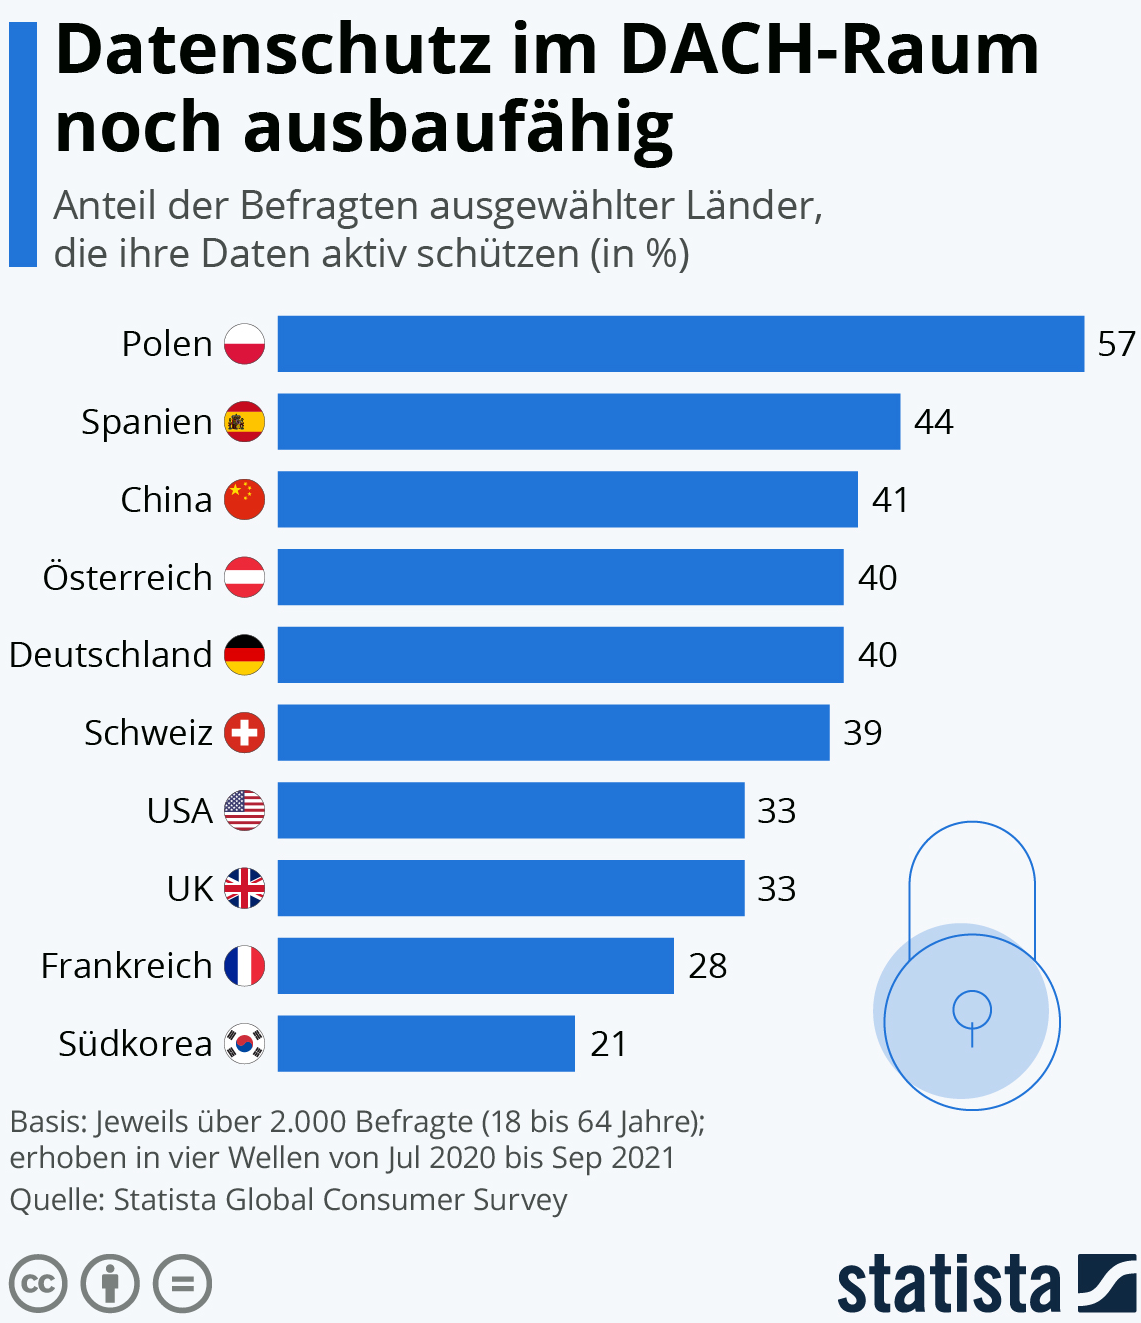 Etwa vier von zehn Personen im DACH-Raum schützen ihre Daten vor Missbrauch. 39 bis 40 Prozent der Befragten in Österreich, Deutschland und der Schweiz haben angegeben, dass sie ihre Daten online sowie offline aktiv versuchen zu schützen.